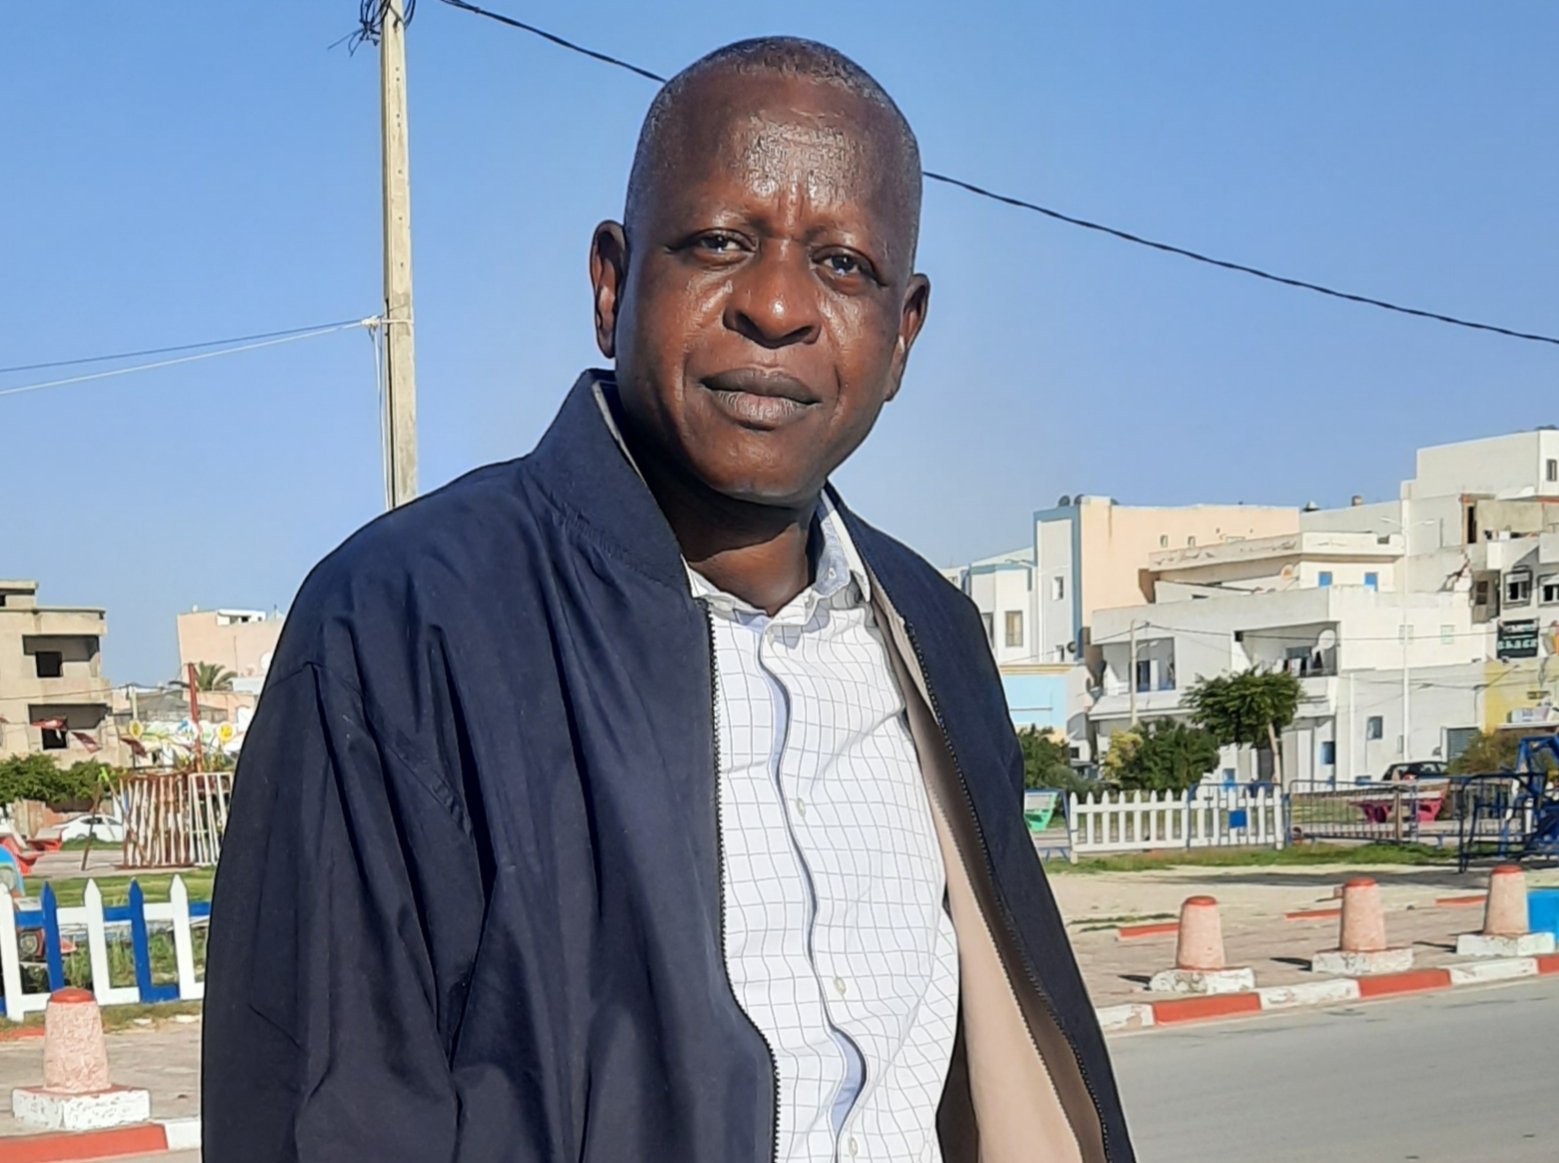 Condamnation du journaliste Moussa Aksar - La Cenozo dénonce « une atteinte grave et préjudiciable à la liberté de presse », appelle les autorités du Niger à la raison